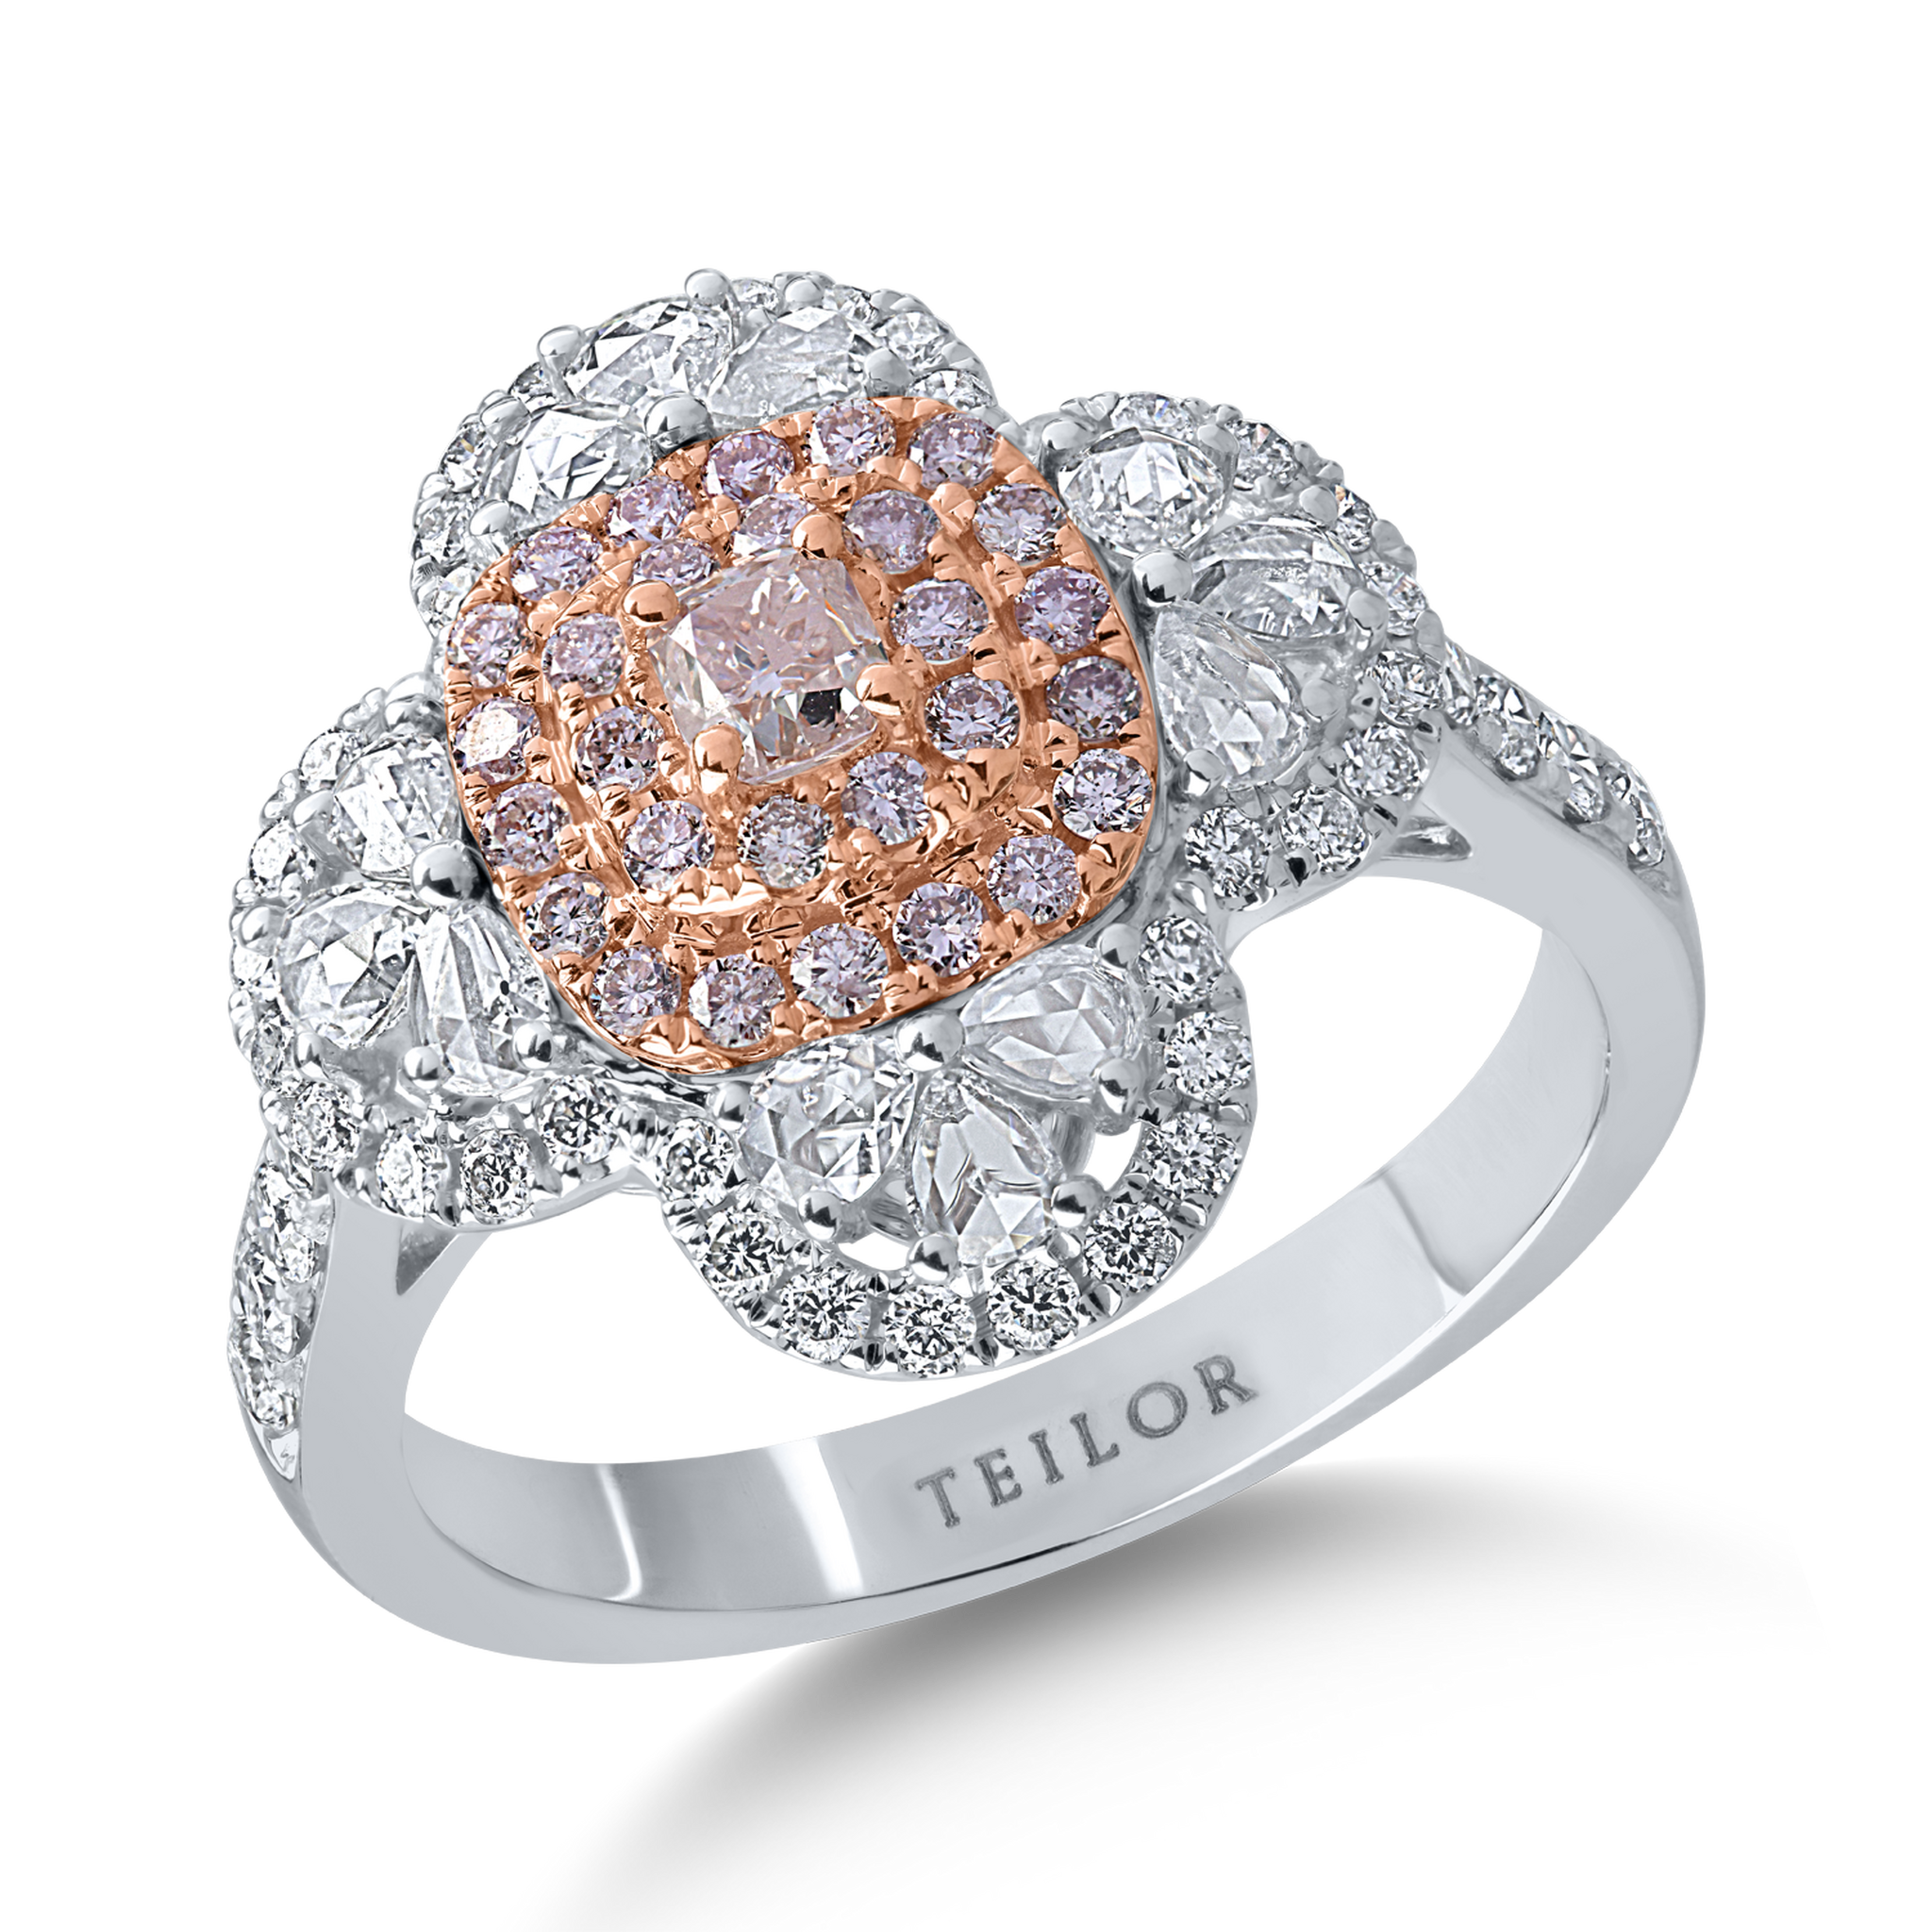 Pierścionek z białego różowego złota z bezbarwnymi diamentami o masie 0.86ct i różowymi diamentami o masie 0.43ct